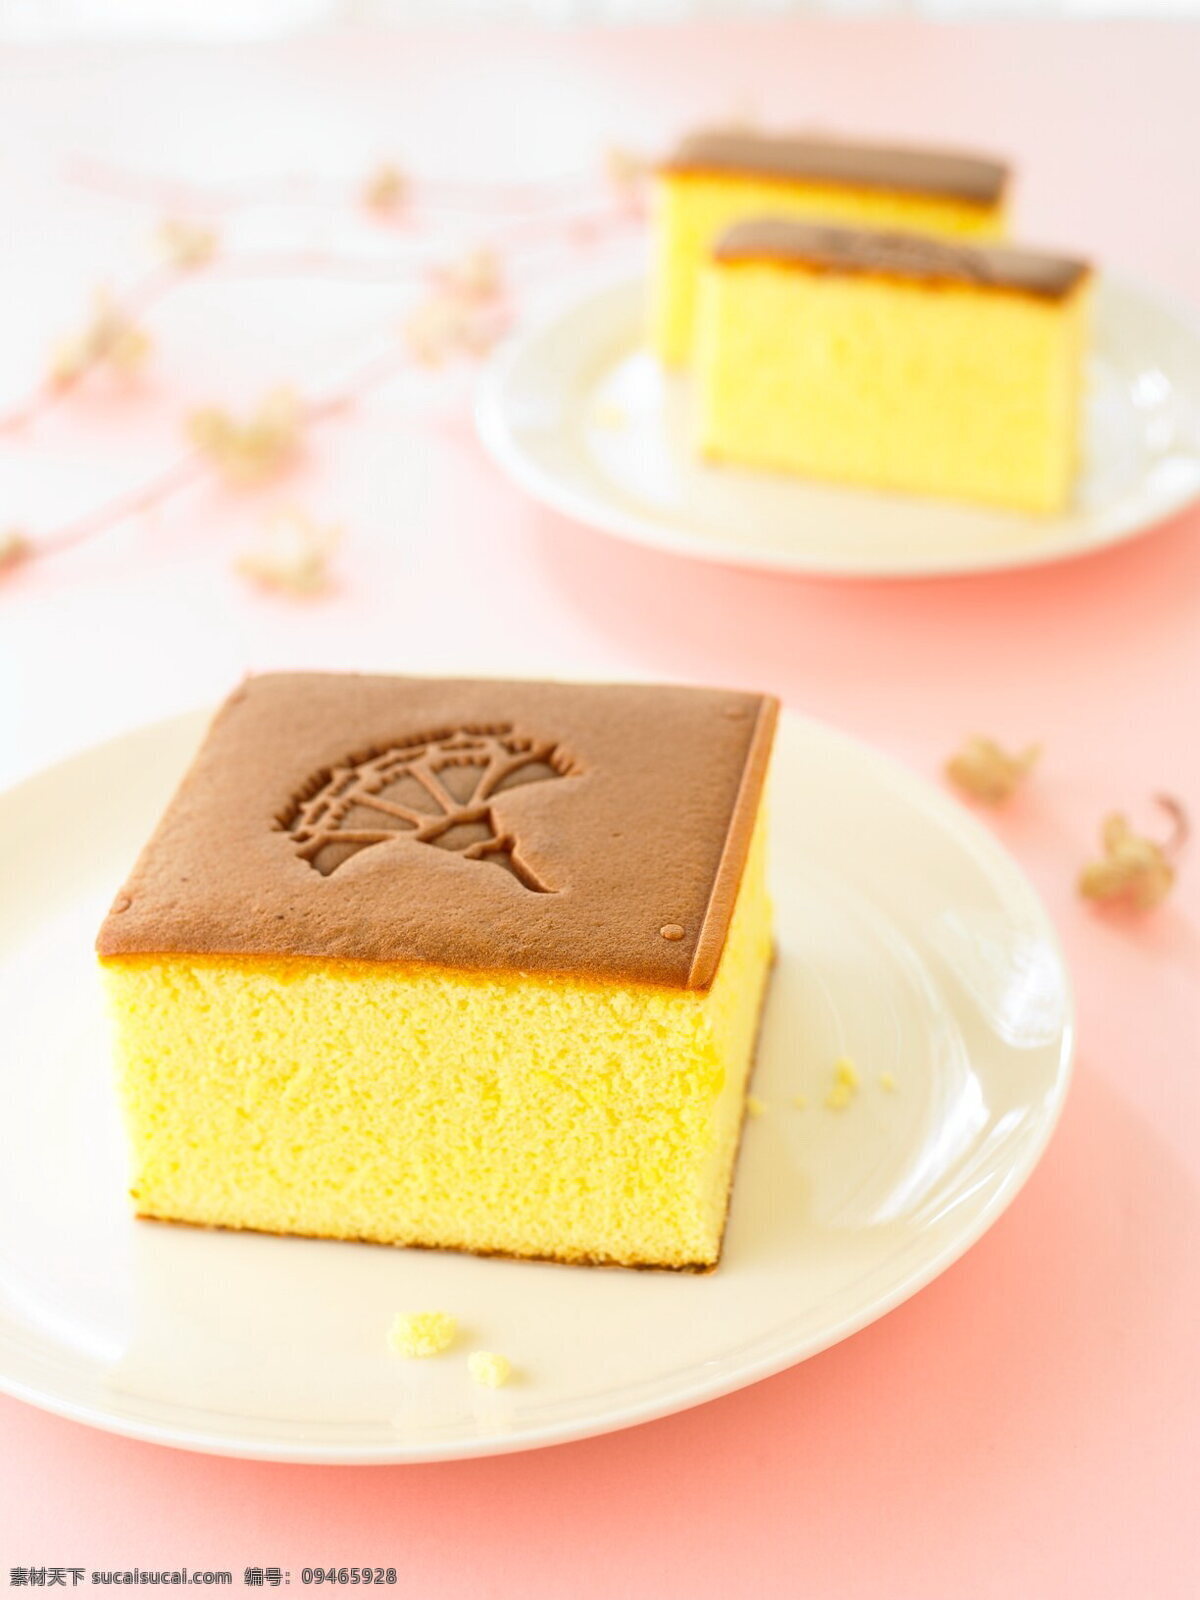 康乃馨蛋糕 康乃馨 烙印 蜂蜜蛋糕 长崎蛋糕 金格 传统美食 餐饮美食